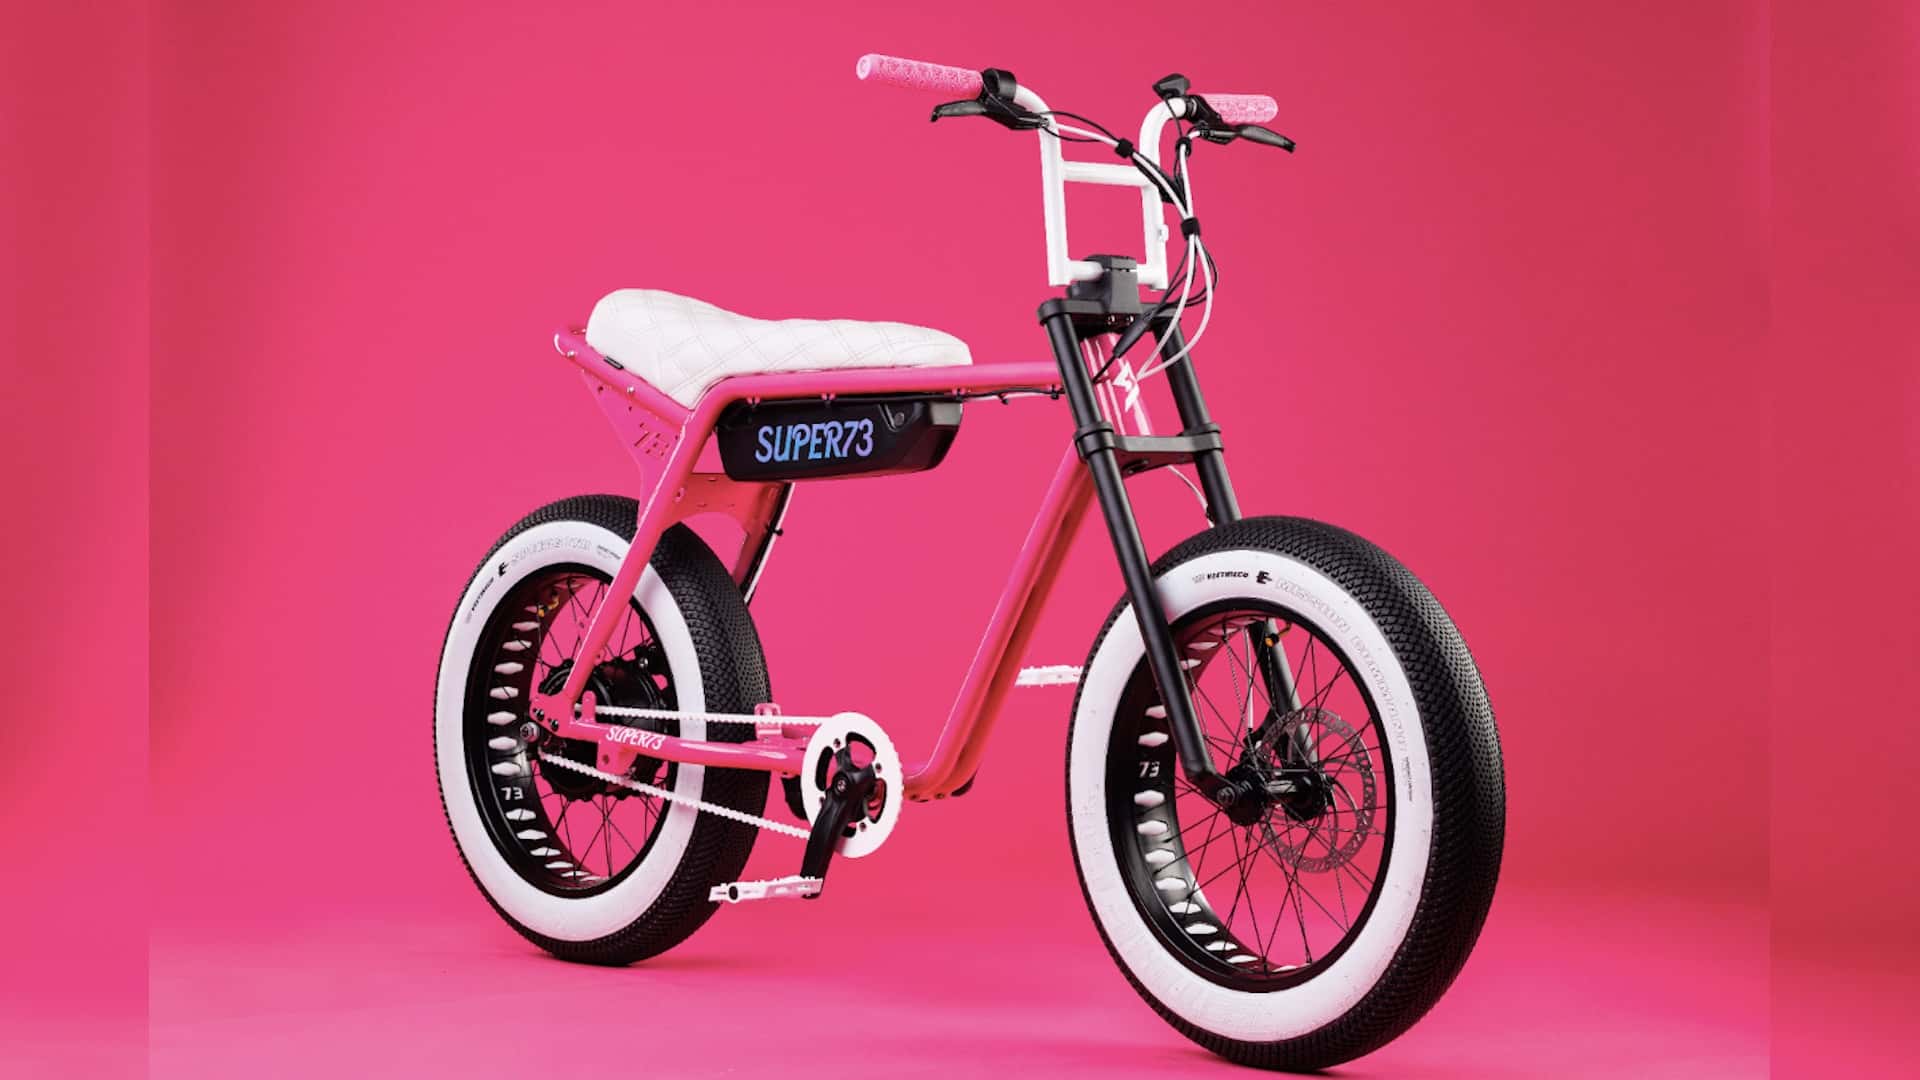 super73 presents custom e-bikes based on barbie and oppenheimer